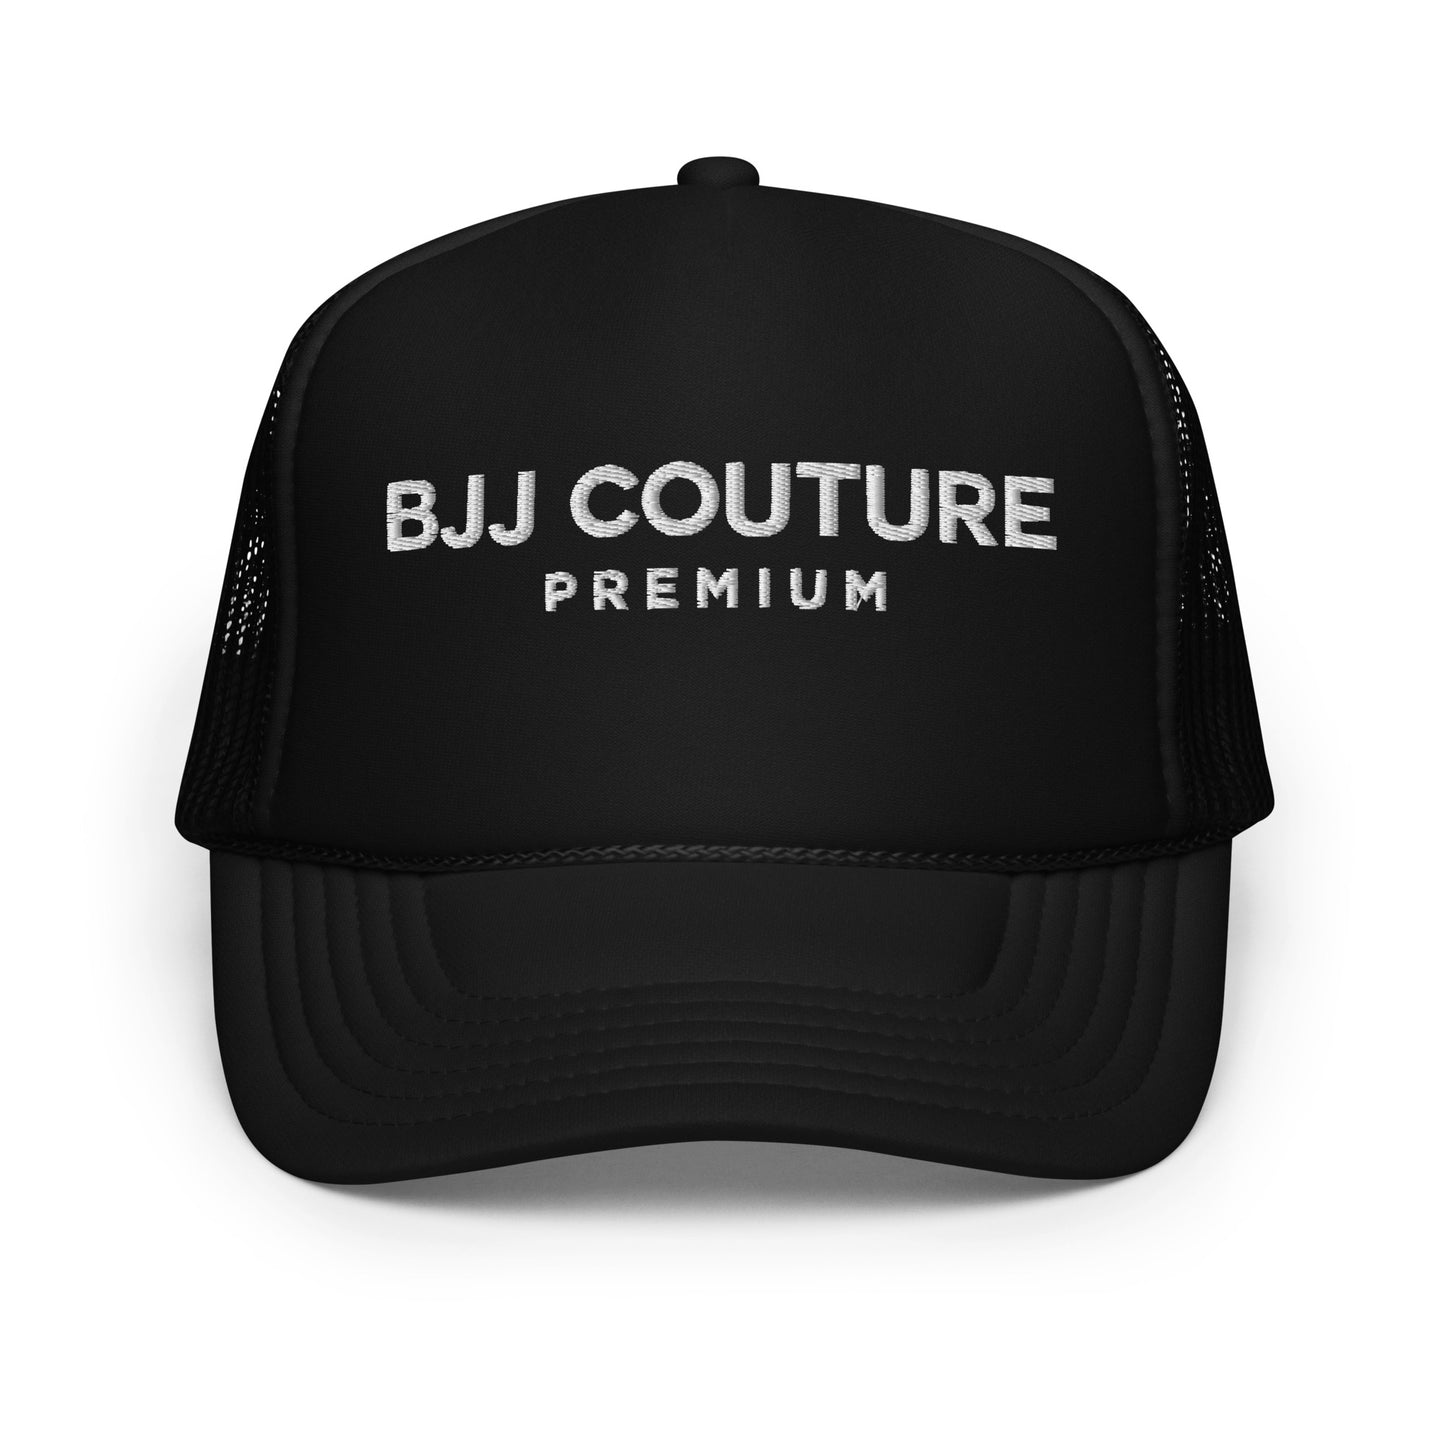 BJJ Couture Premium Foam trucker hat - 6 color combinations